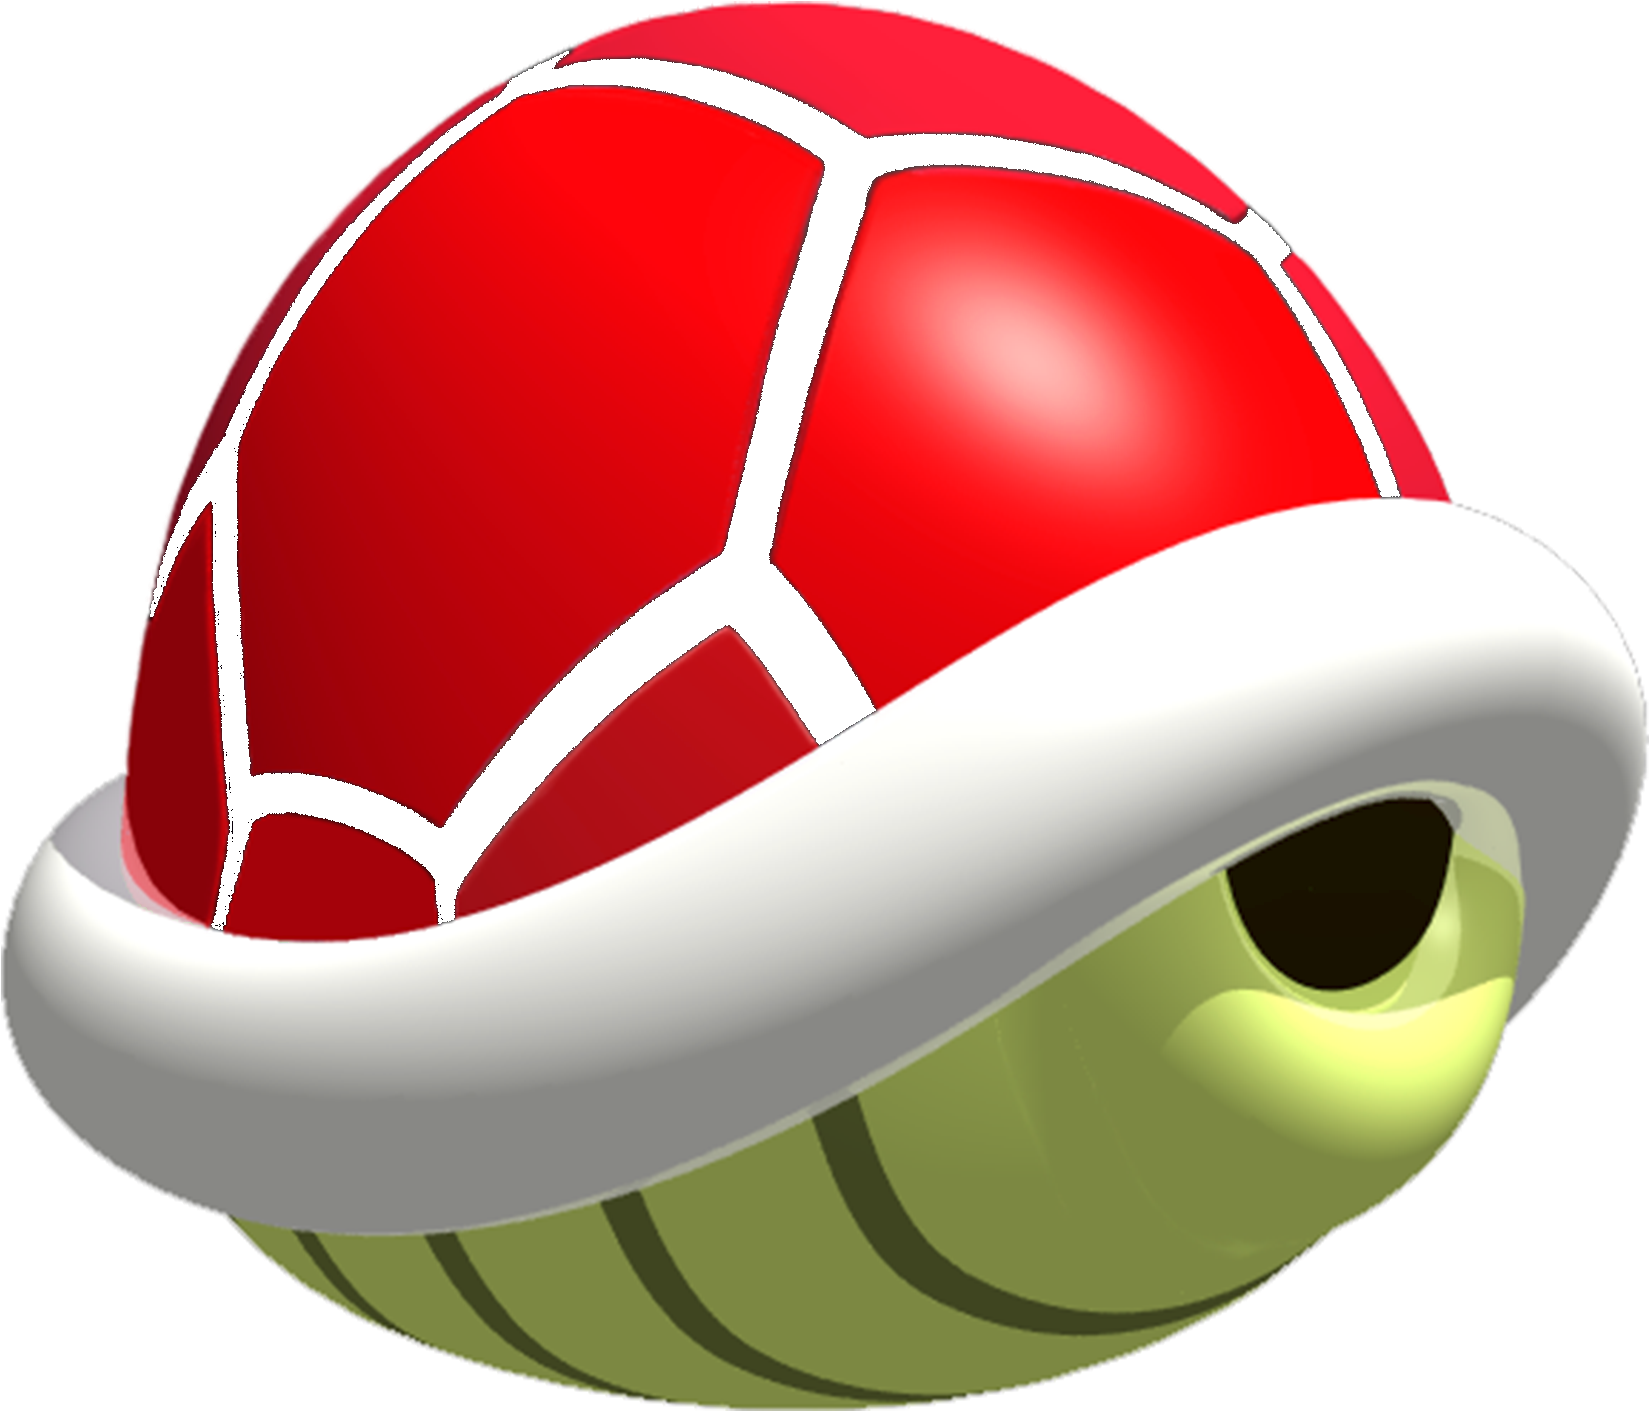 Mario Kart 64 - Mario Kart Red Shell (1660x1428)